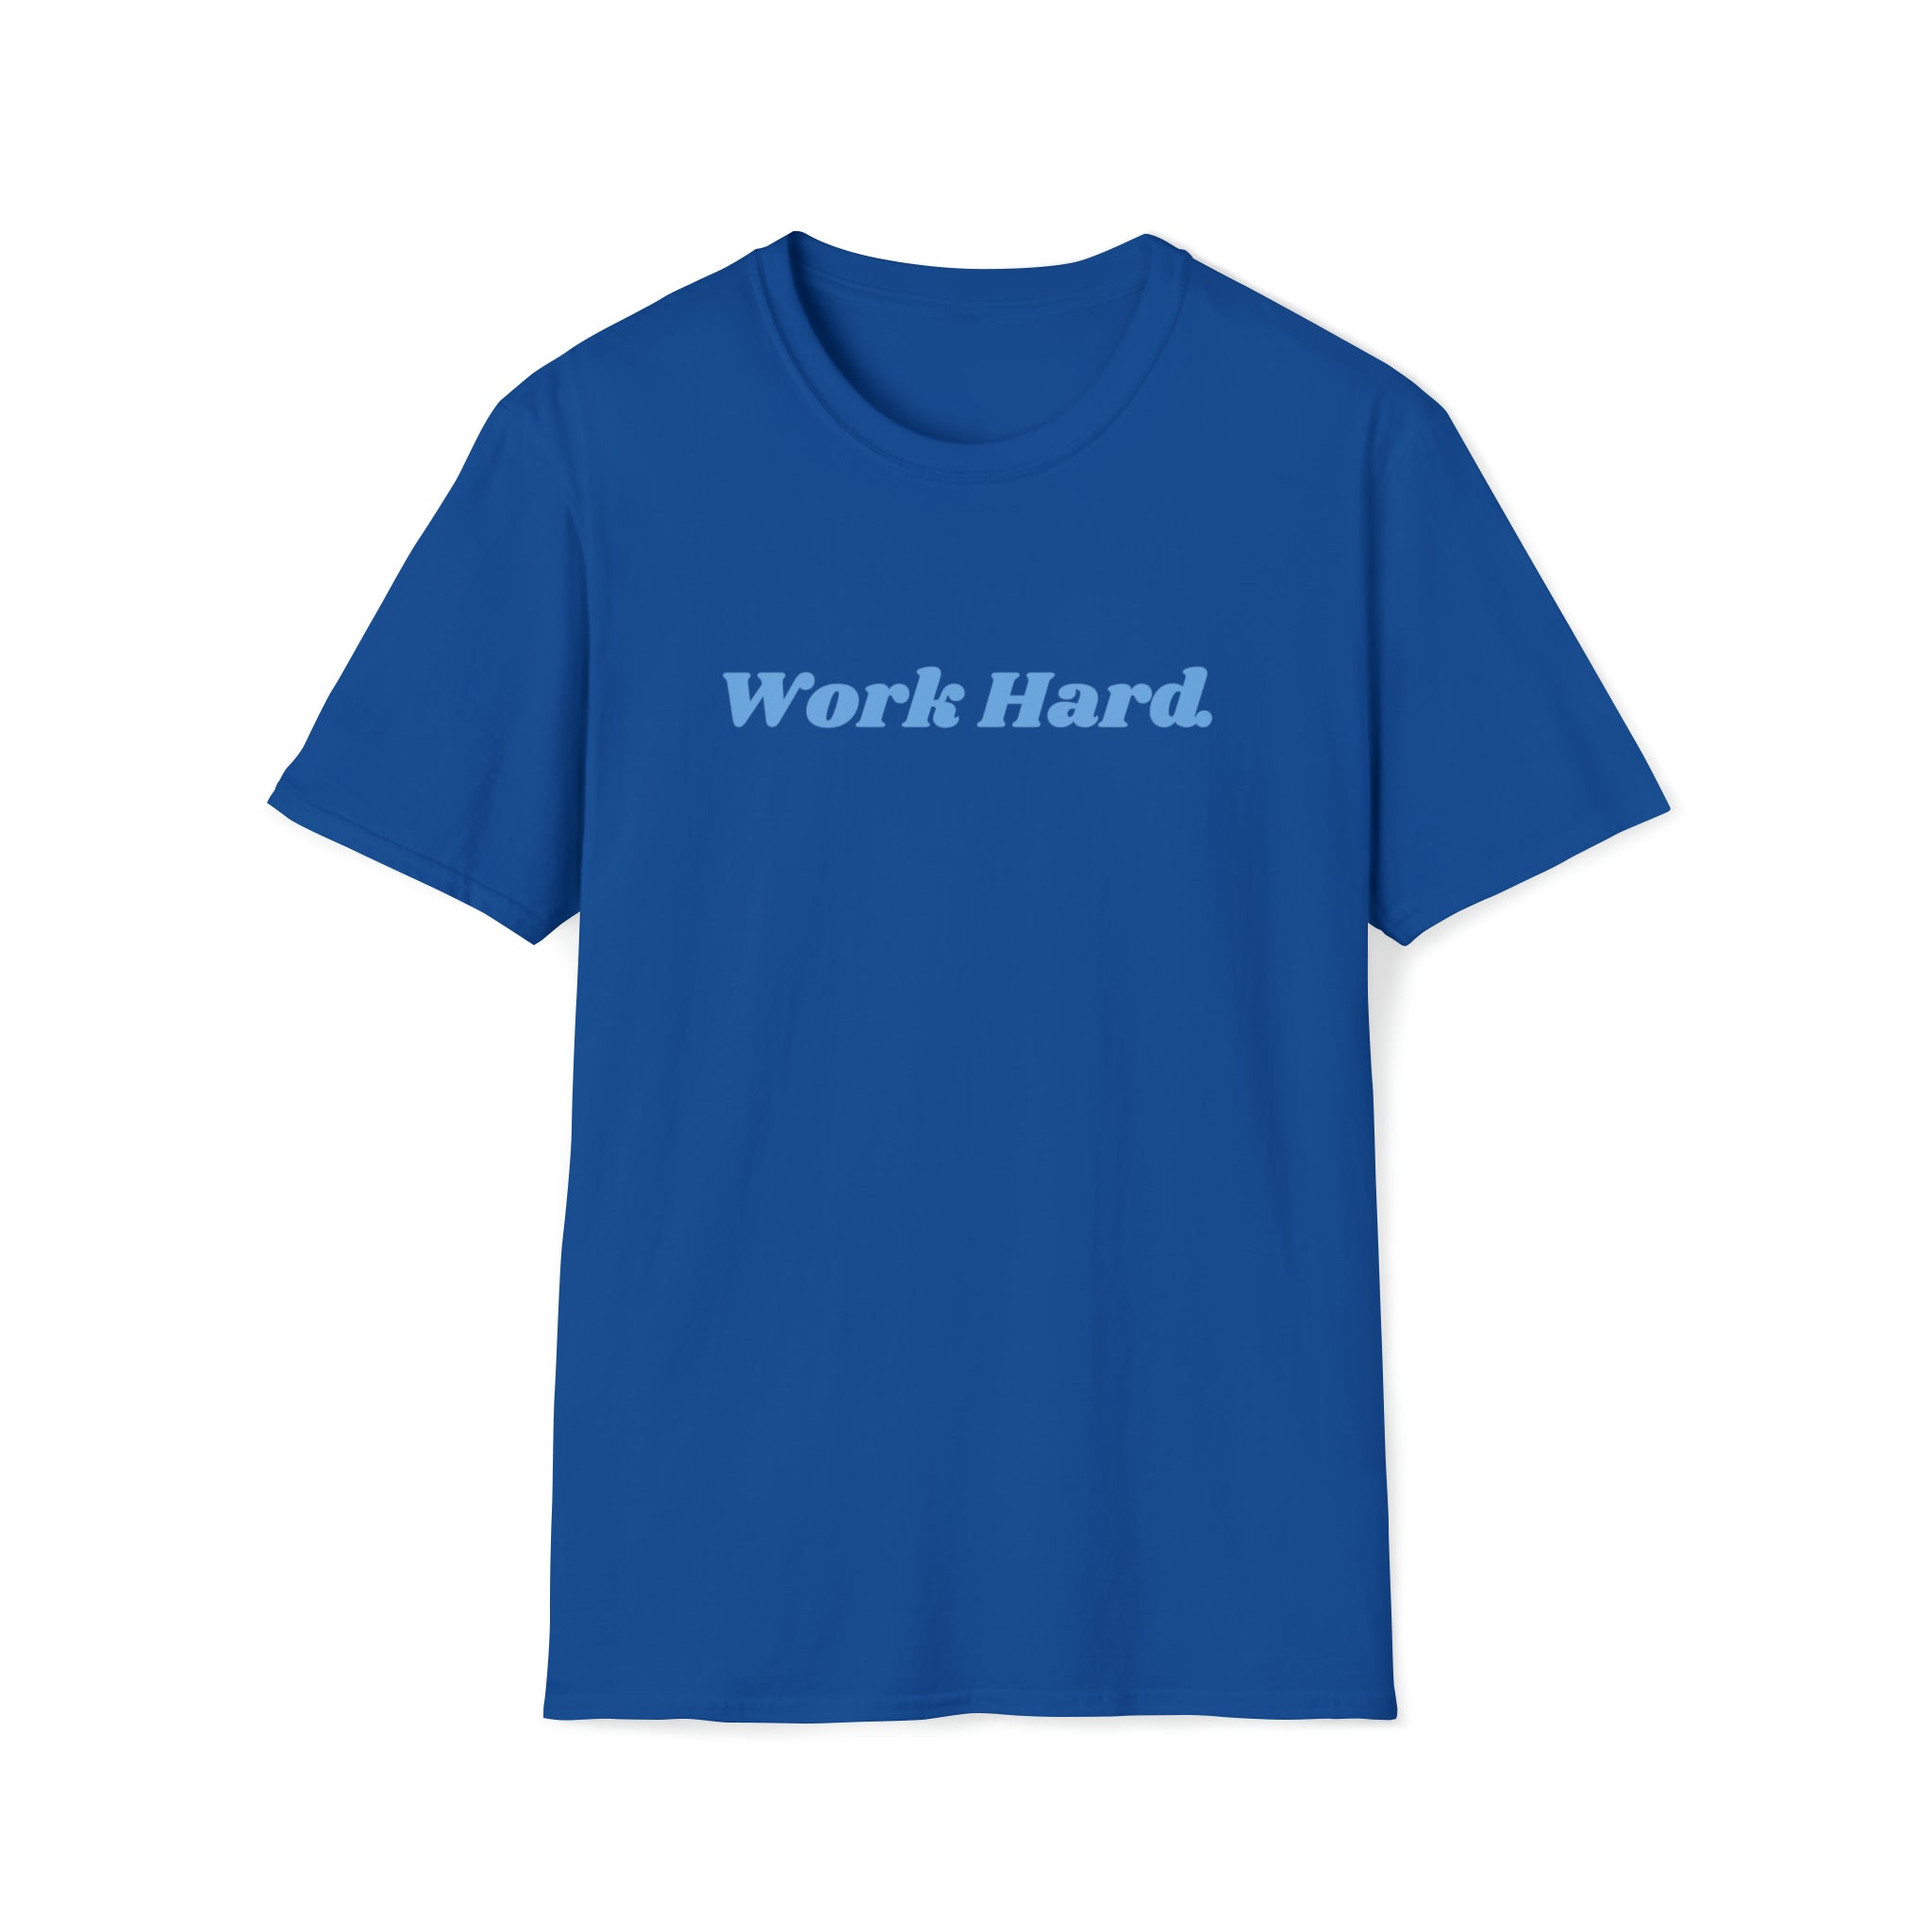 Work Hard. T-Shirt